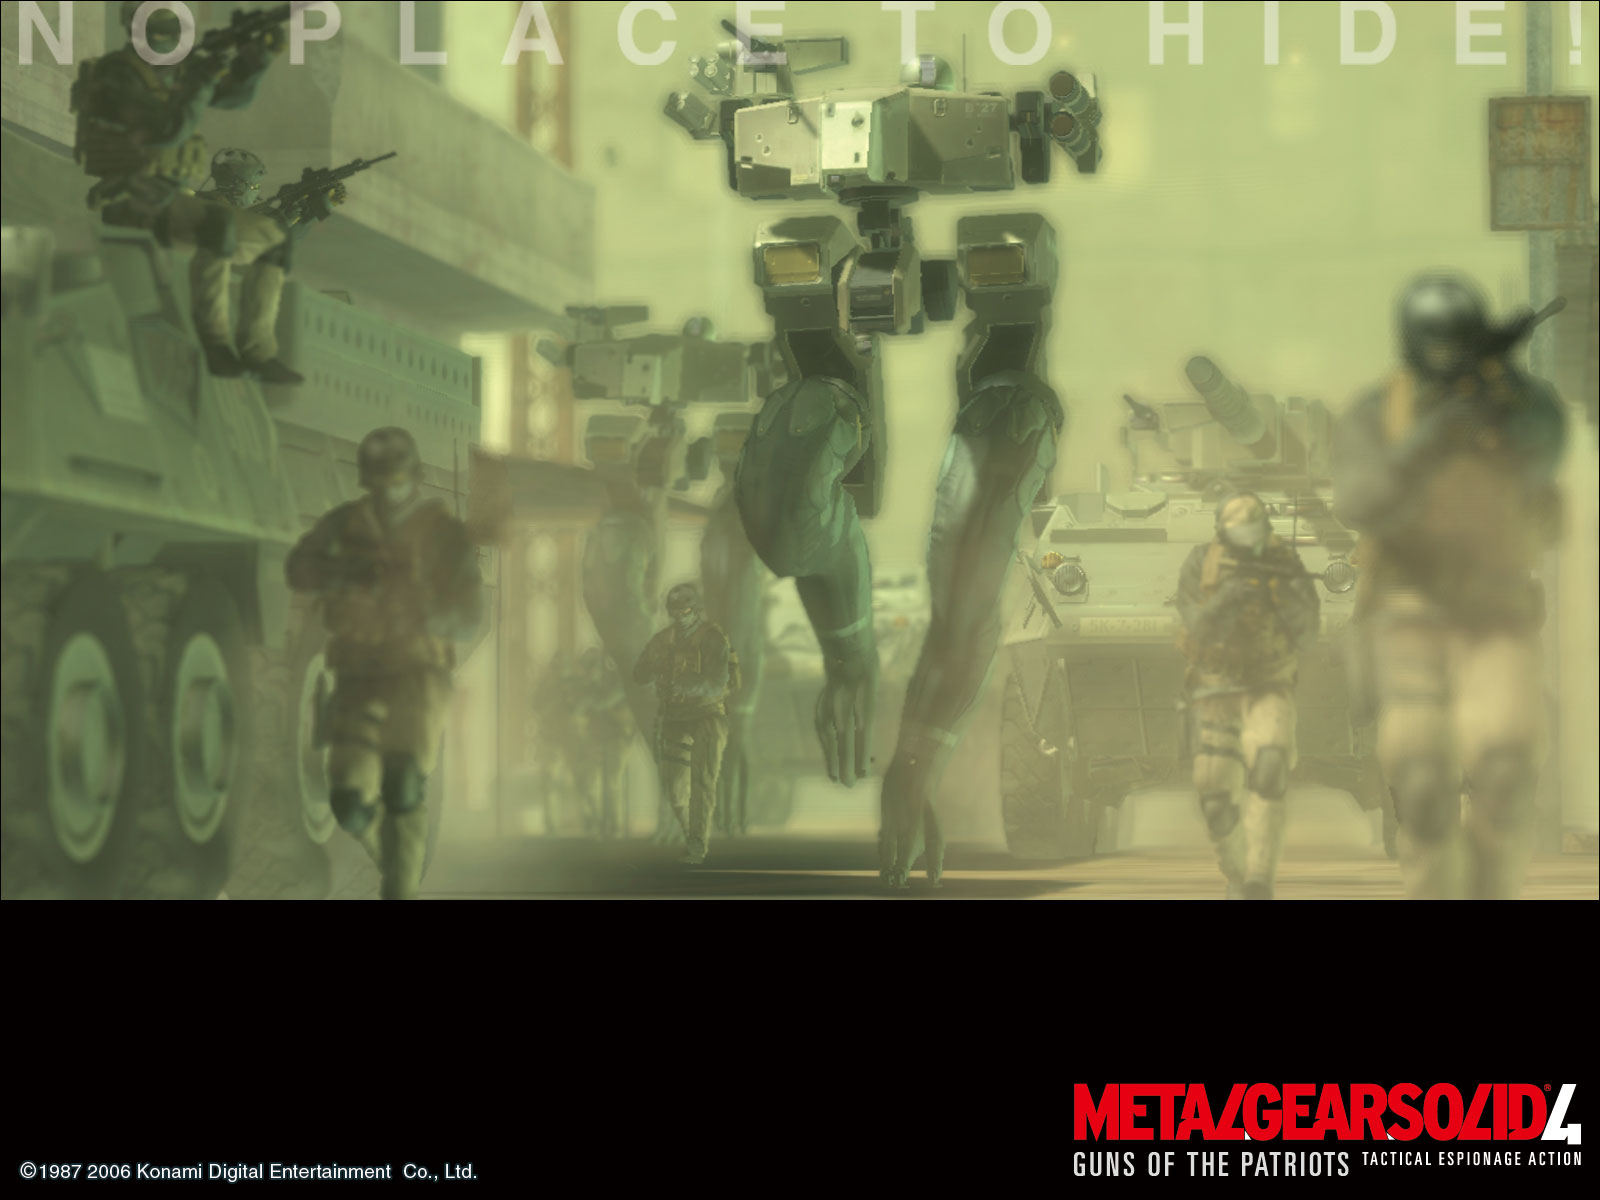 Metal Gear Solid 4 Wallpaper 1600x1200 ID3636